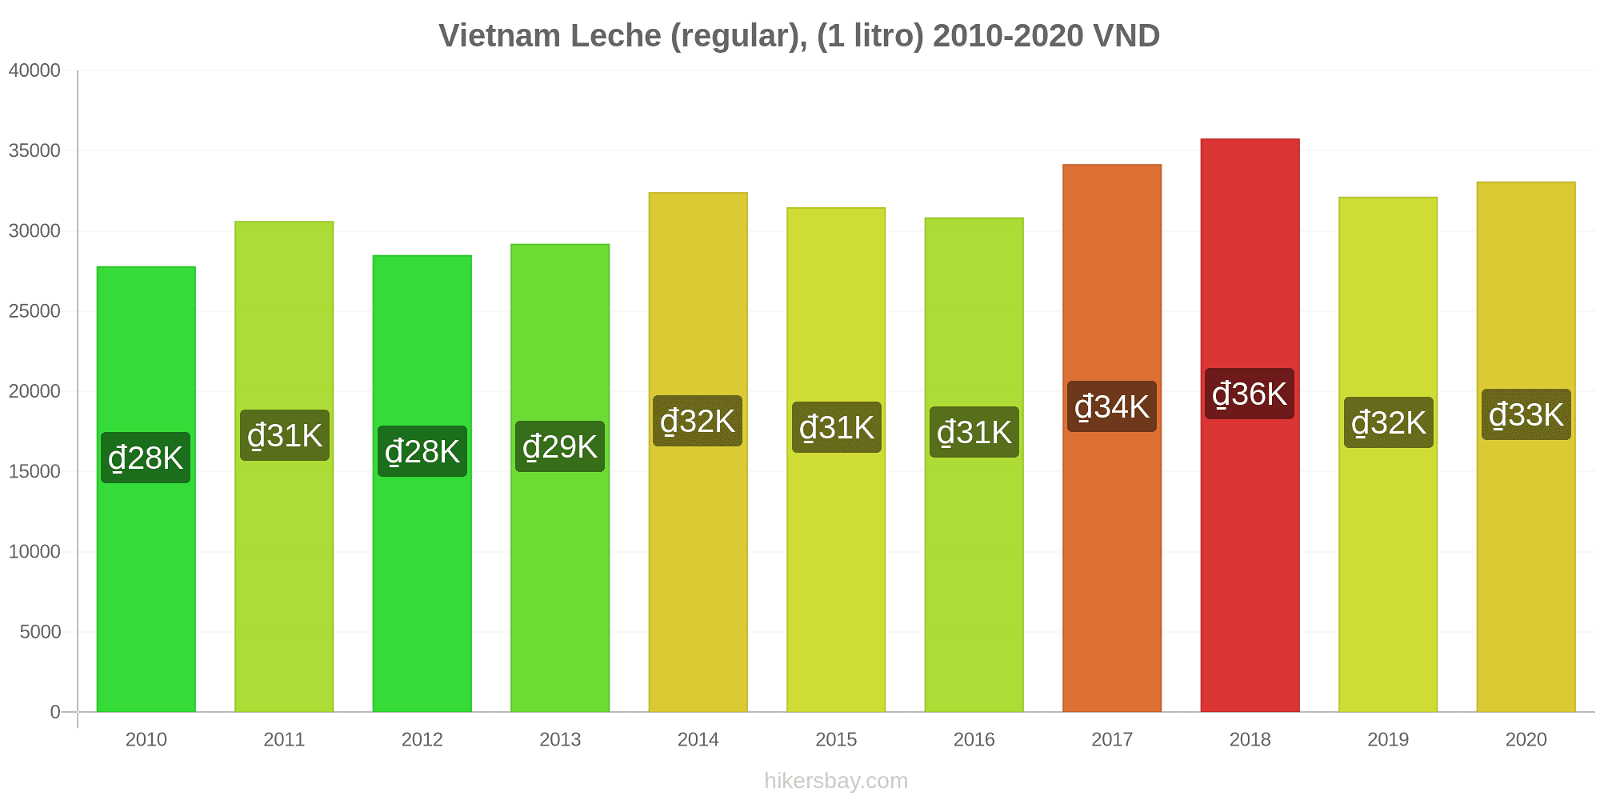 Vietnam cambios de precios Leche (Regular), (1 litro) hikersbay.com